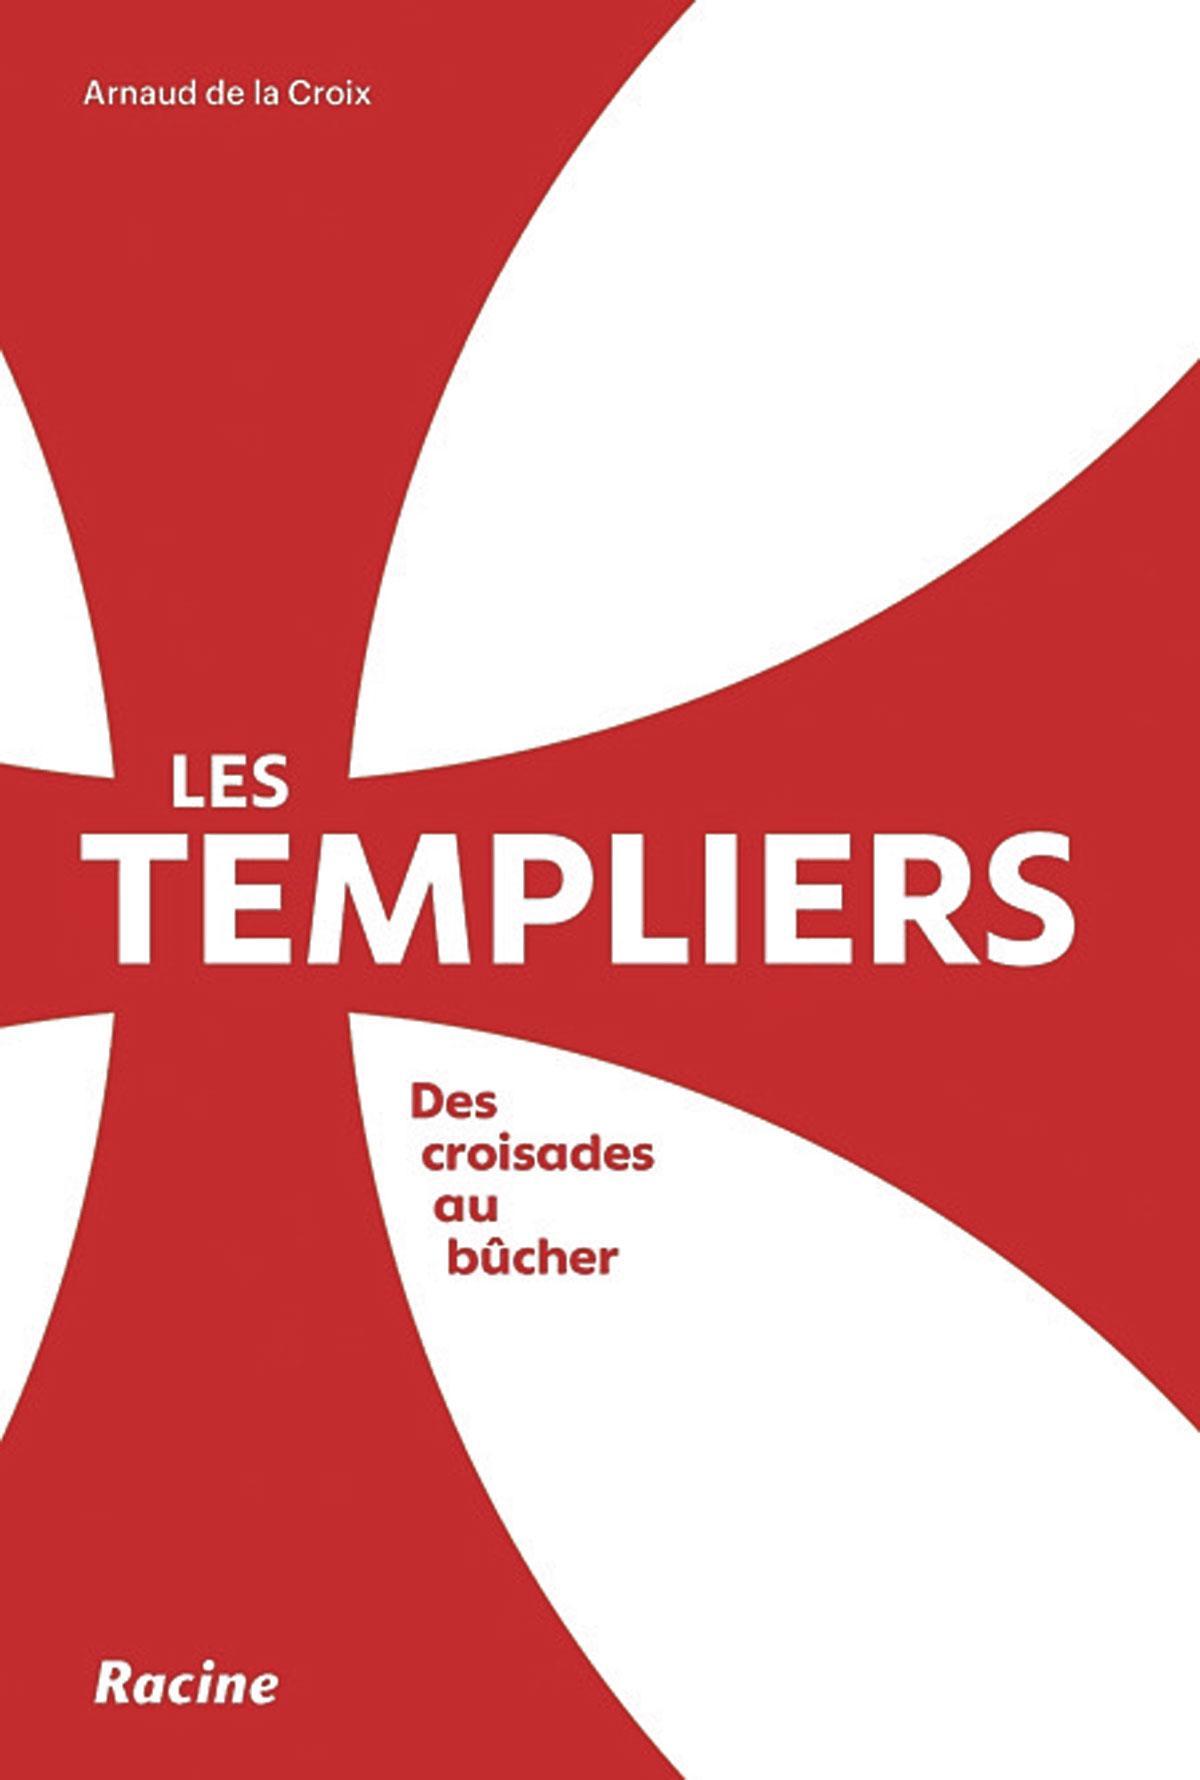 (1) Les Templiers. Des croisades au bûcher, par Arnaud de la Croix, Racine, 168 p.